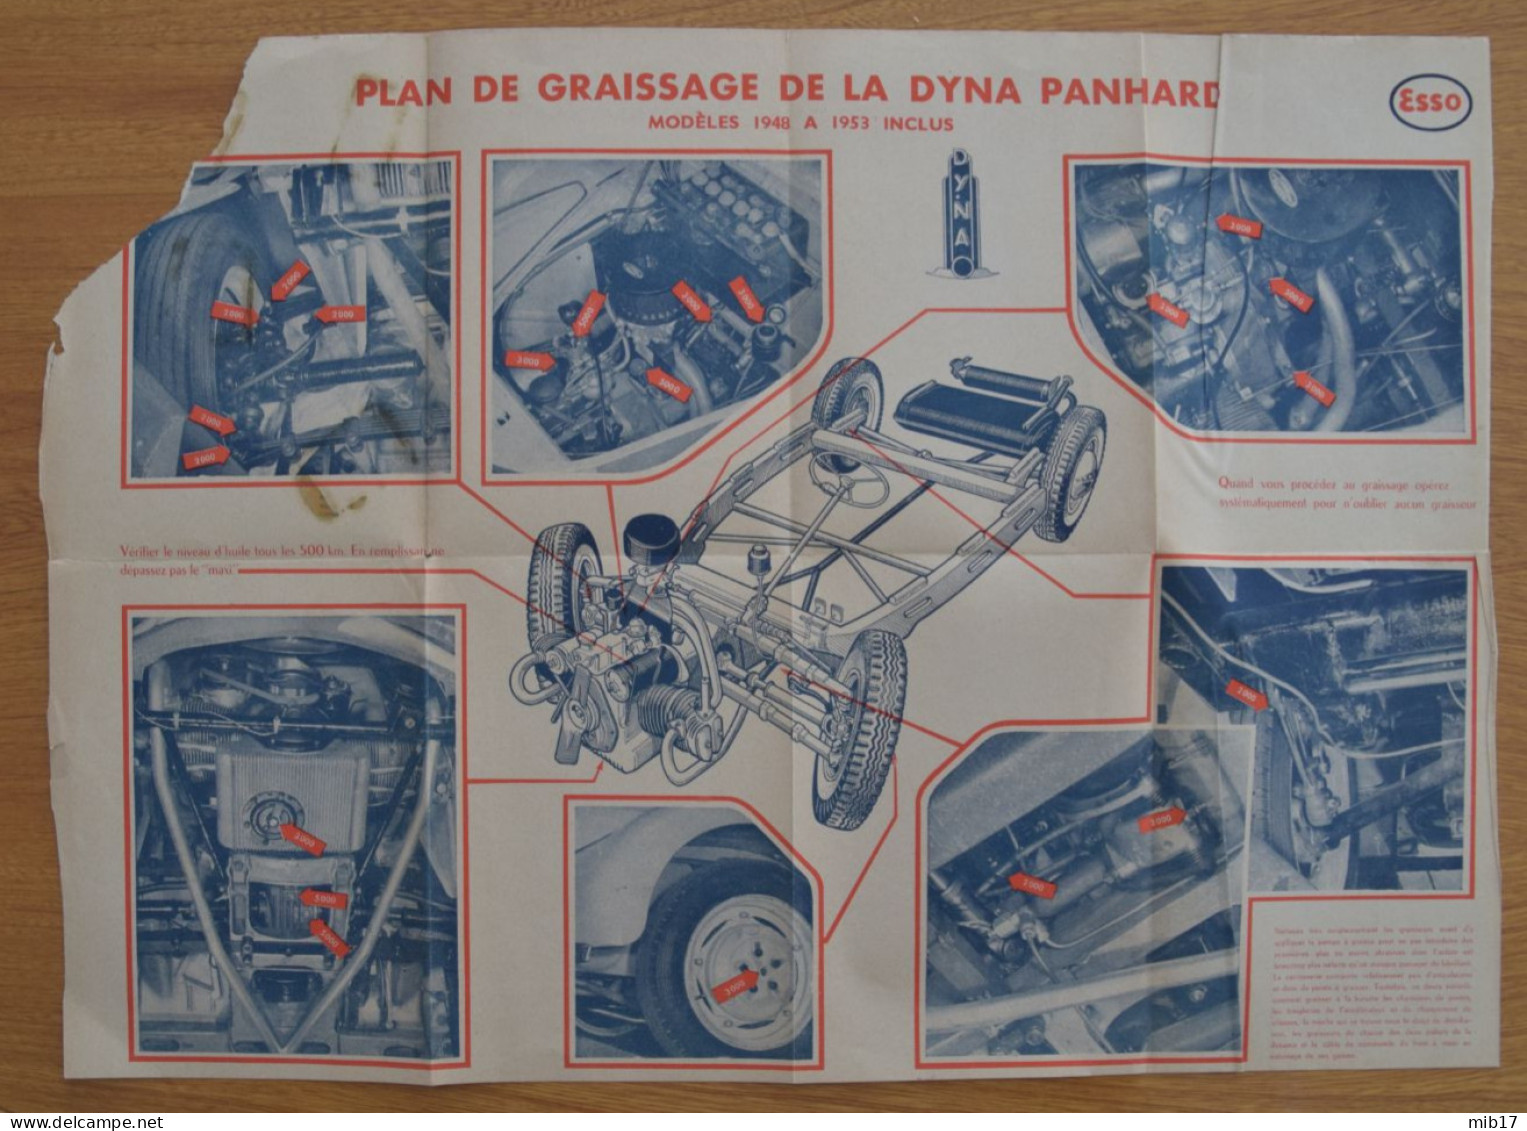 VOTRE PANHARD DYNA doc technique juin/1955 pour réparer et entrenir votre Panhard dyna tous modèles 1948-1955 et junior